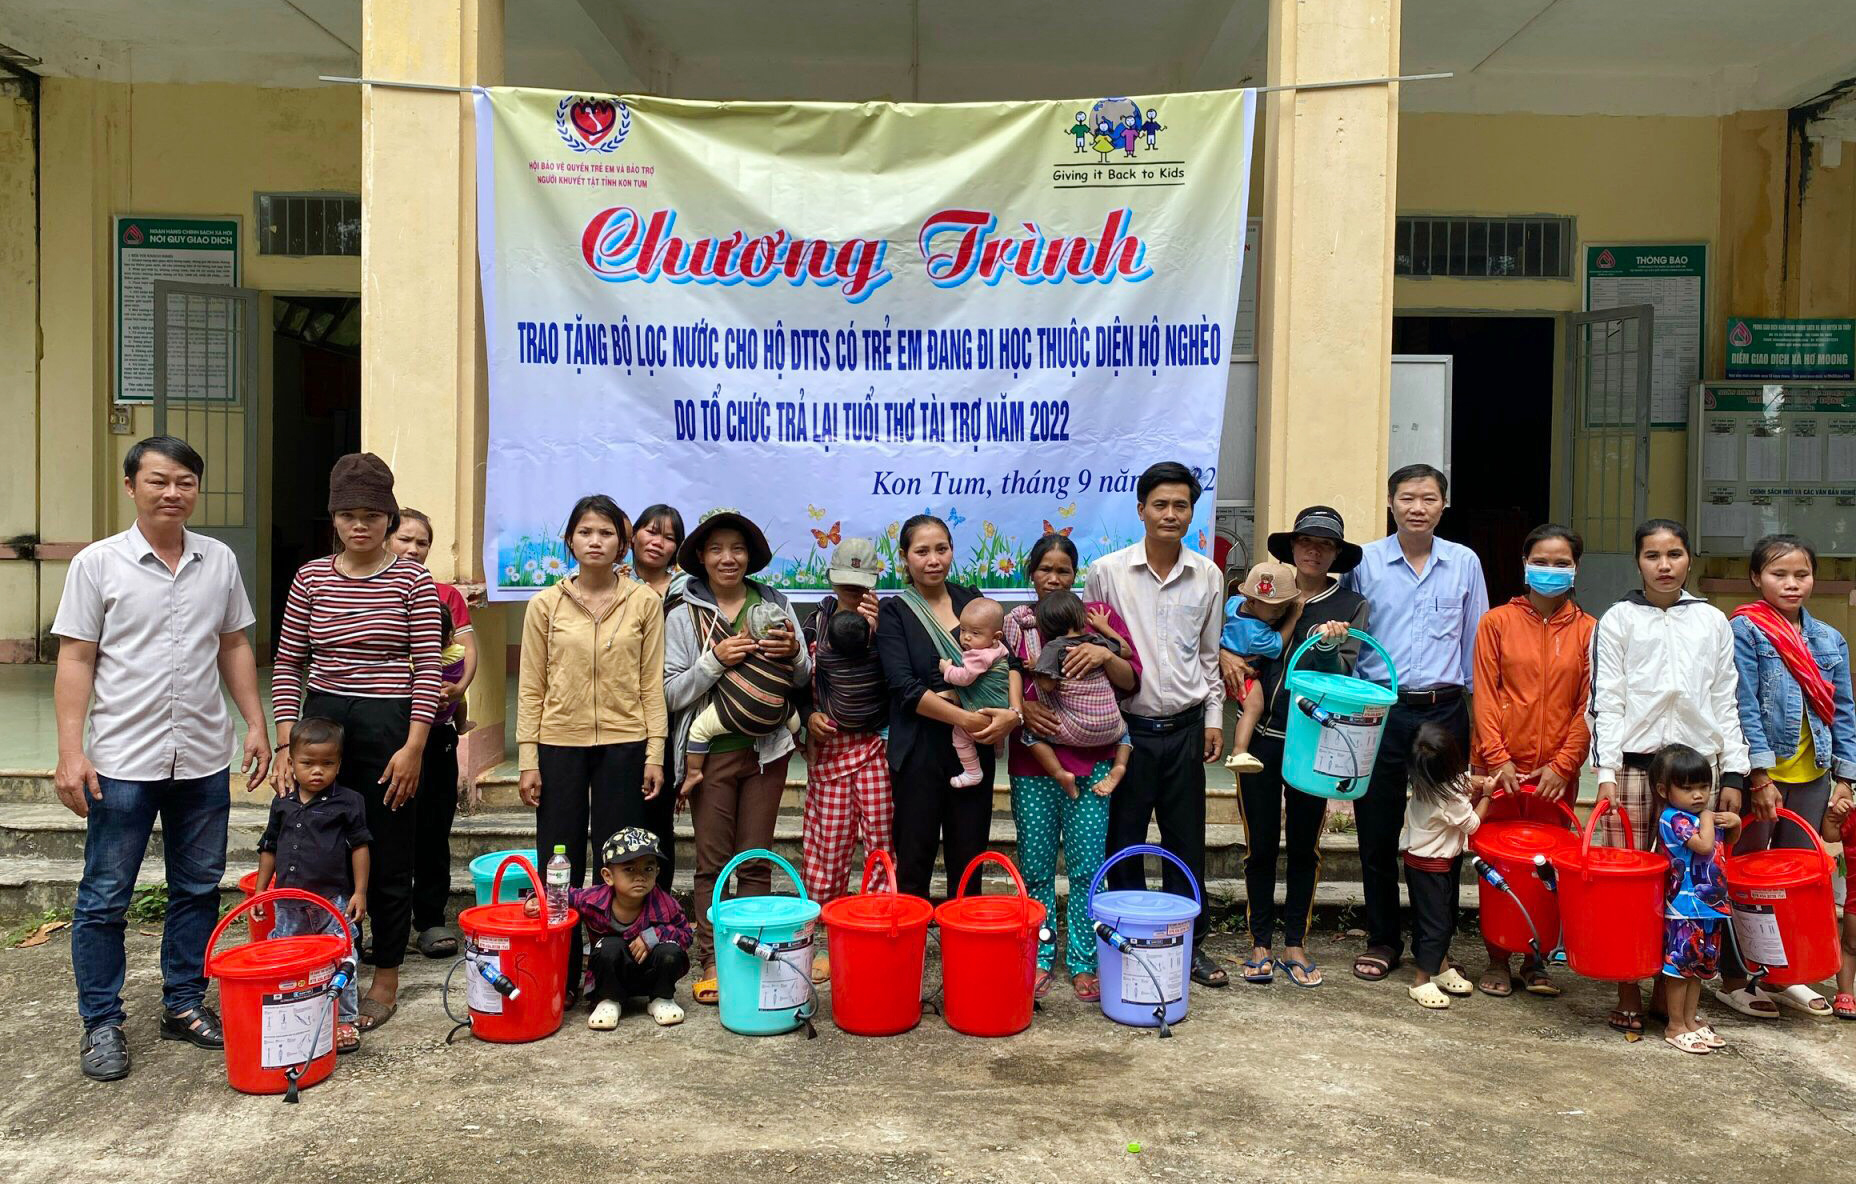 Tỉnh Hội Kon tum trao tặng 800 bộ lọc nước cho đồng bào dân tộc thiểu số